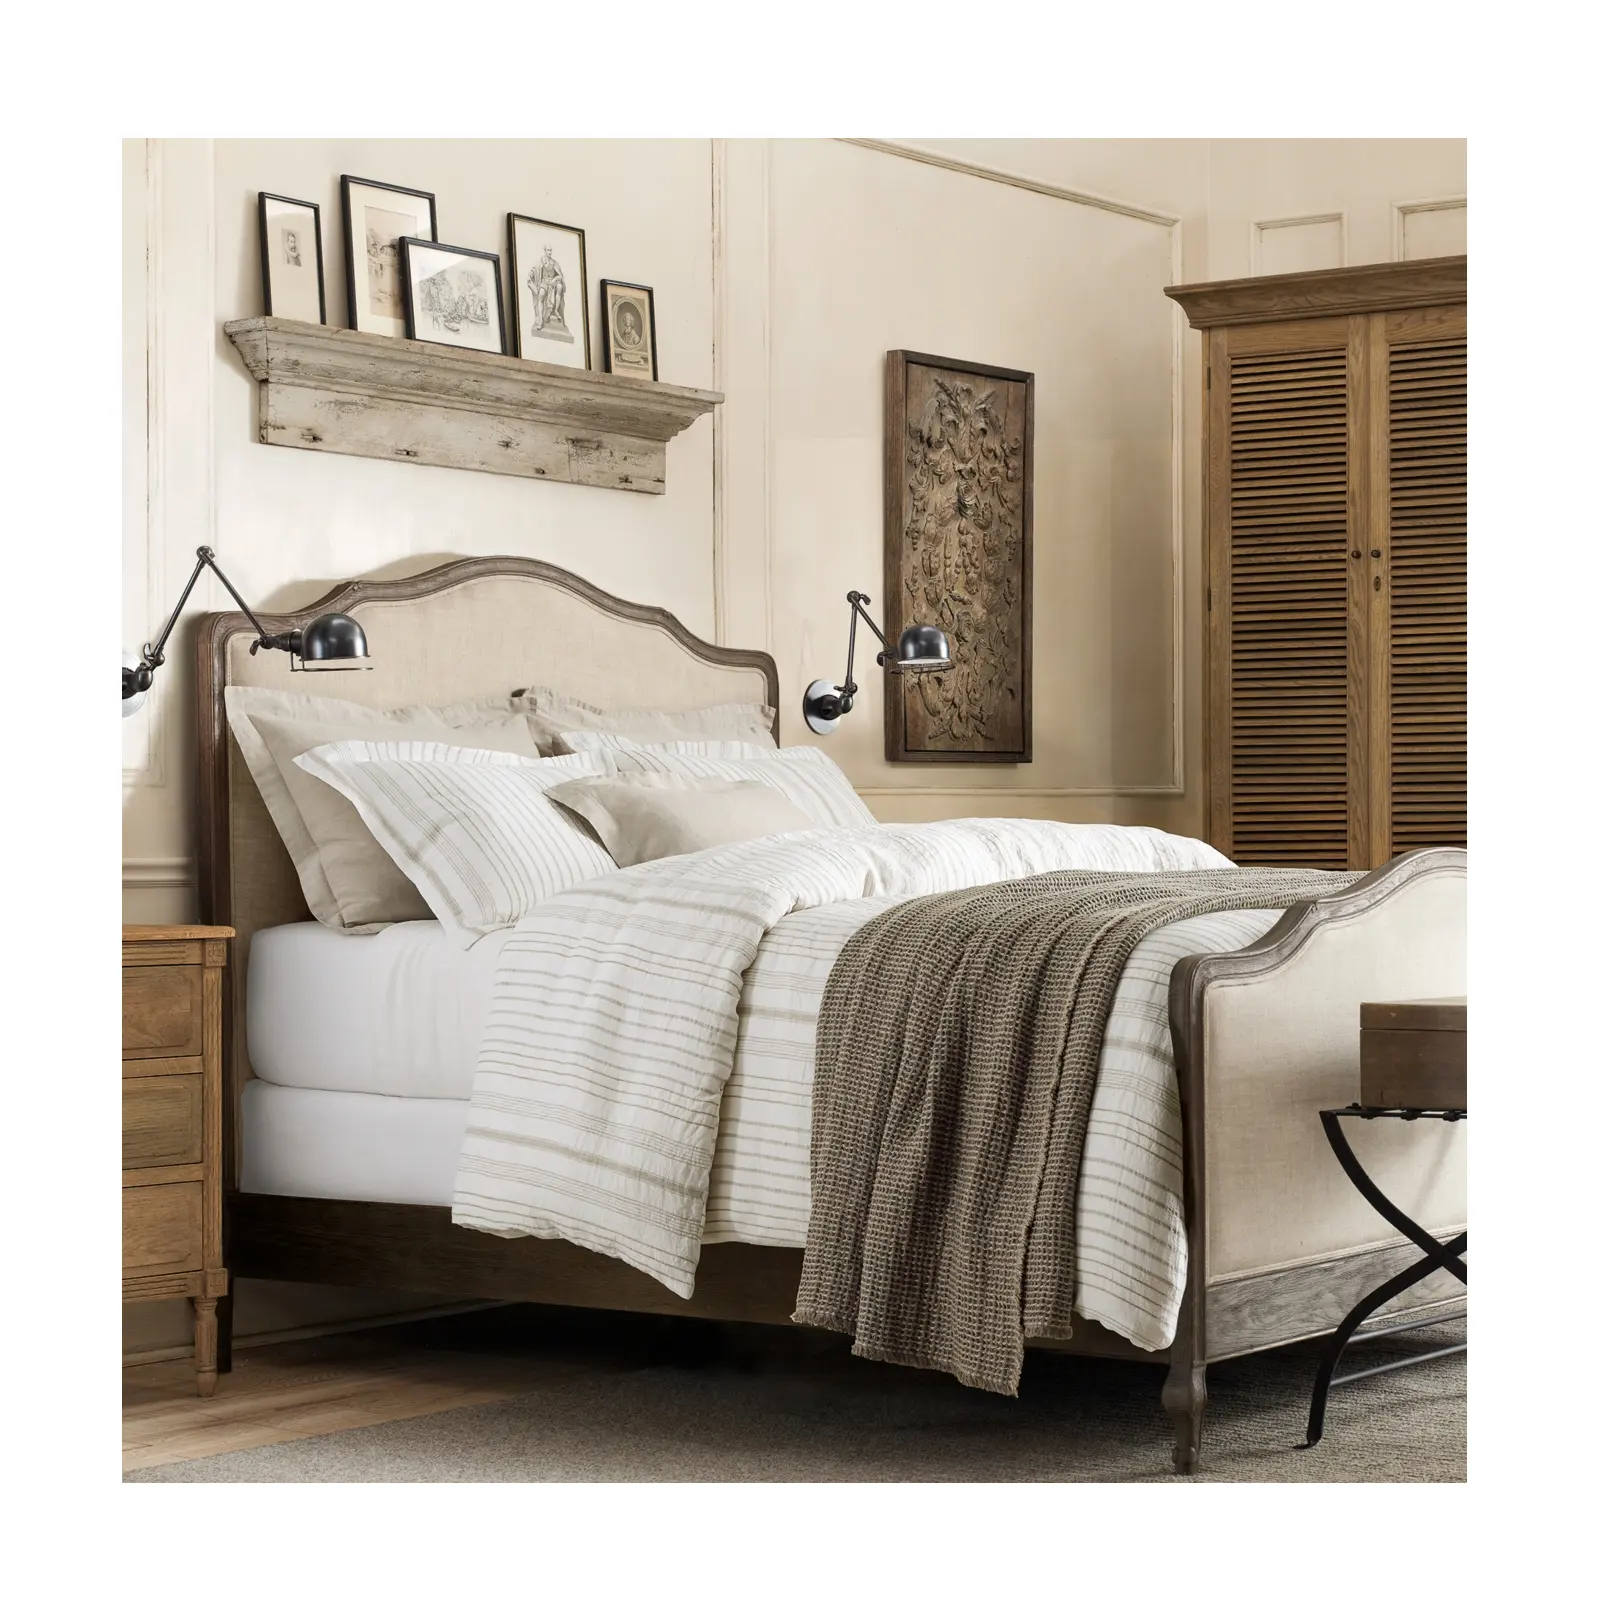 französische klassische schlafzimmermöbel aus holz doppelbett lorraine gepolstertes robustes eichenholzbett mit fußbrett